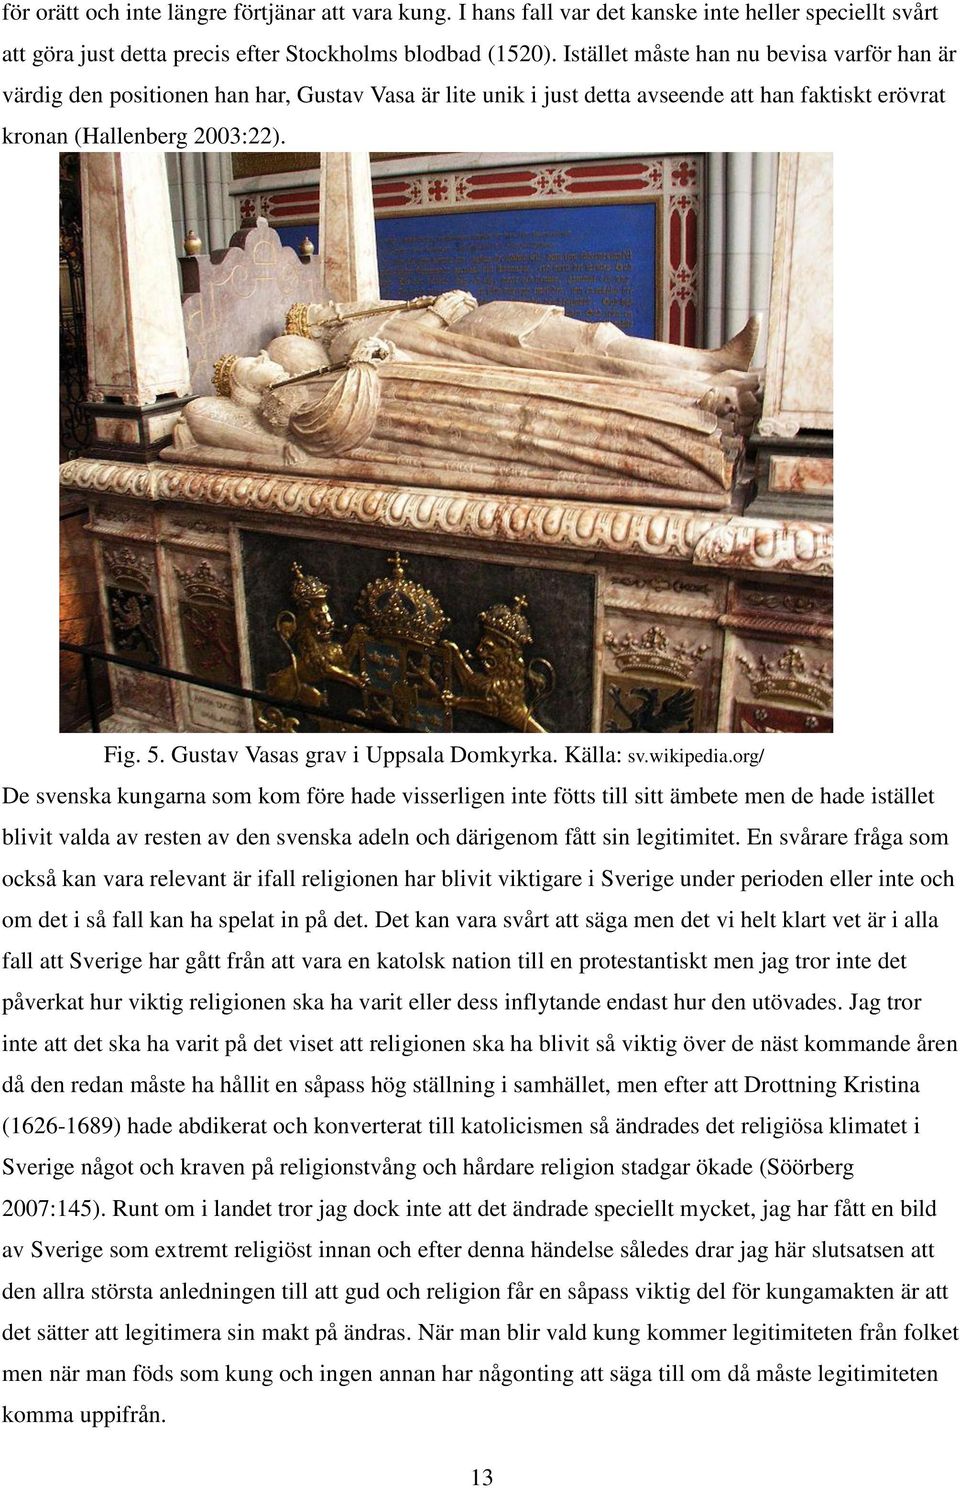 Gustav Vasas grav i Uppsala Domkyrka. Källa: sv.wikipedia.